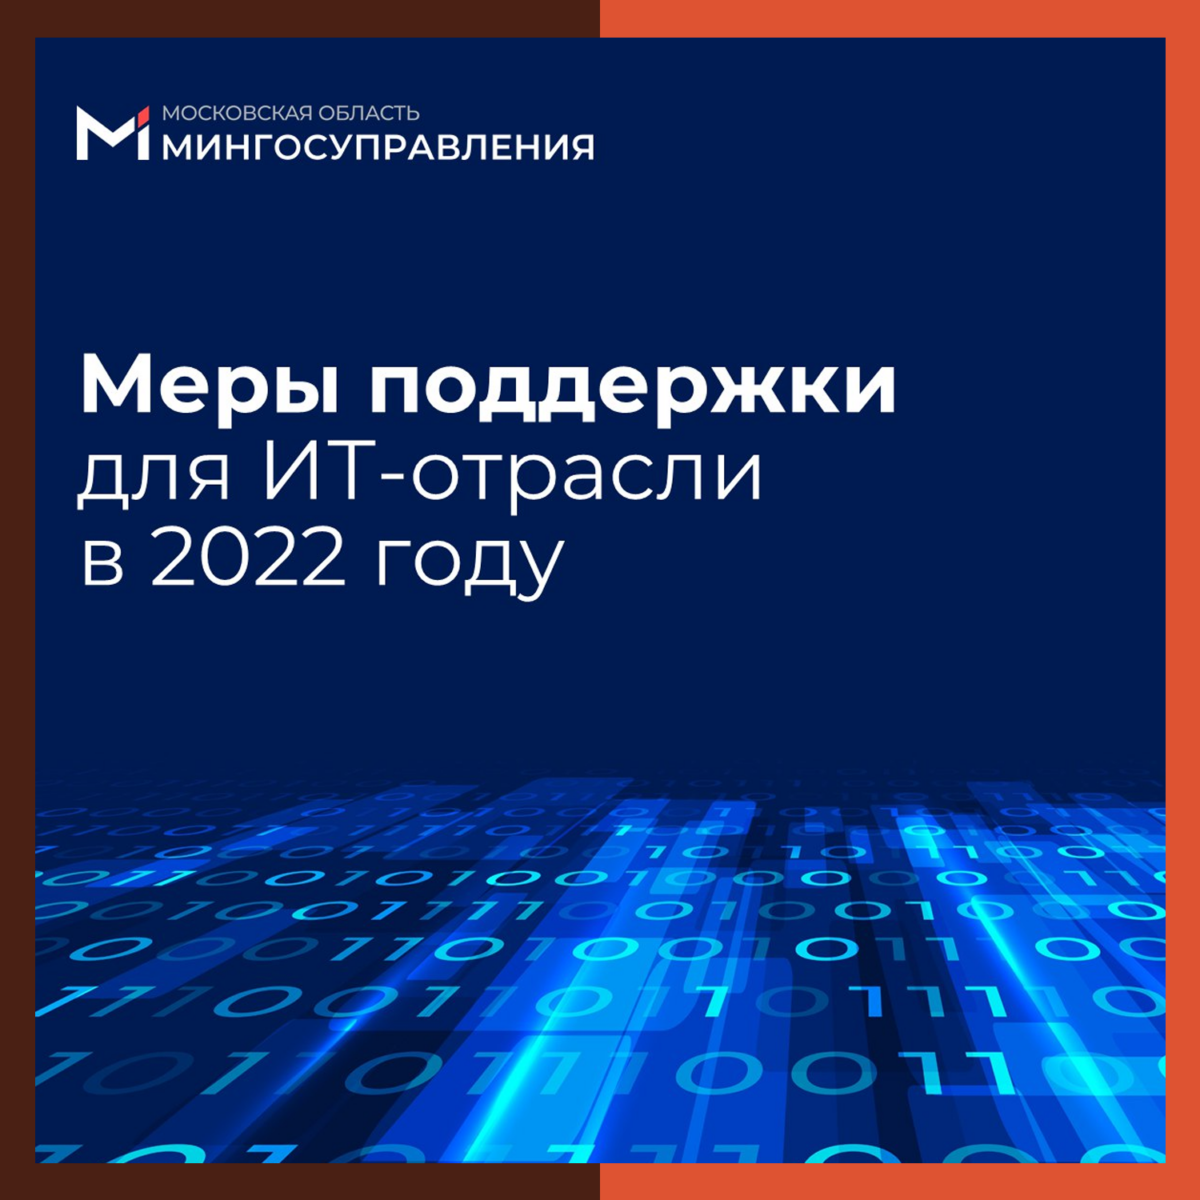 💻 Поддержка ИТ-отрасли в 2022 году